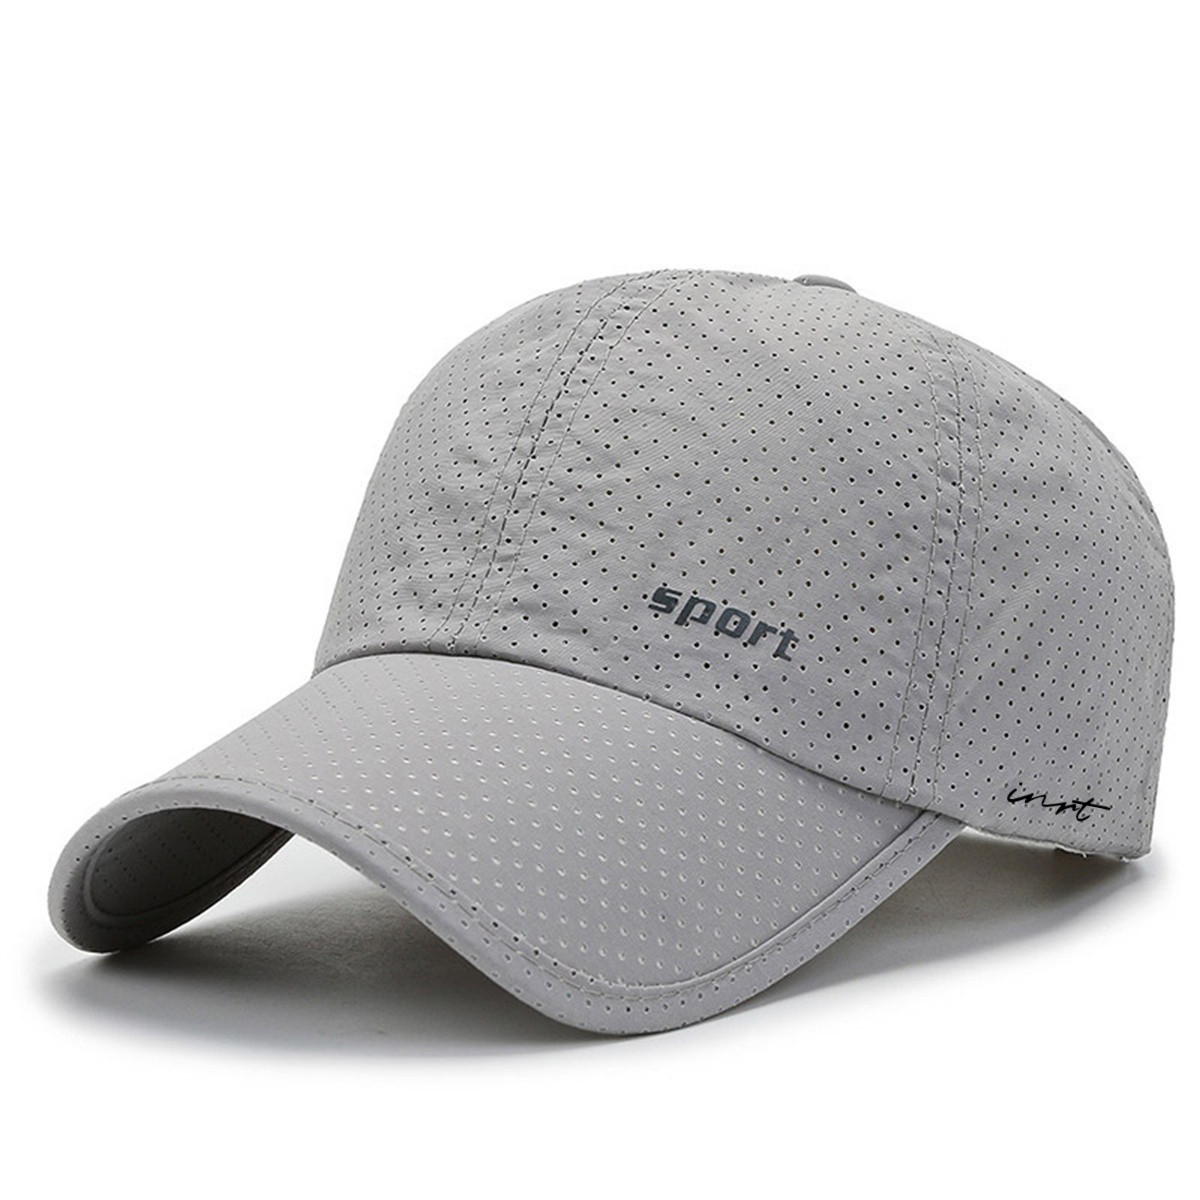 速干棒球帽夏季圆顶防晒纯色通用透气平纹运动帽遮阳棒球帽